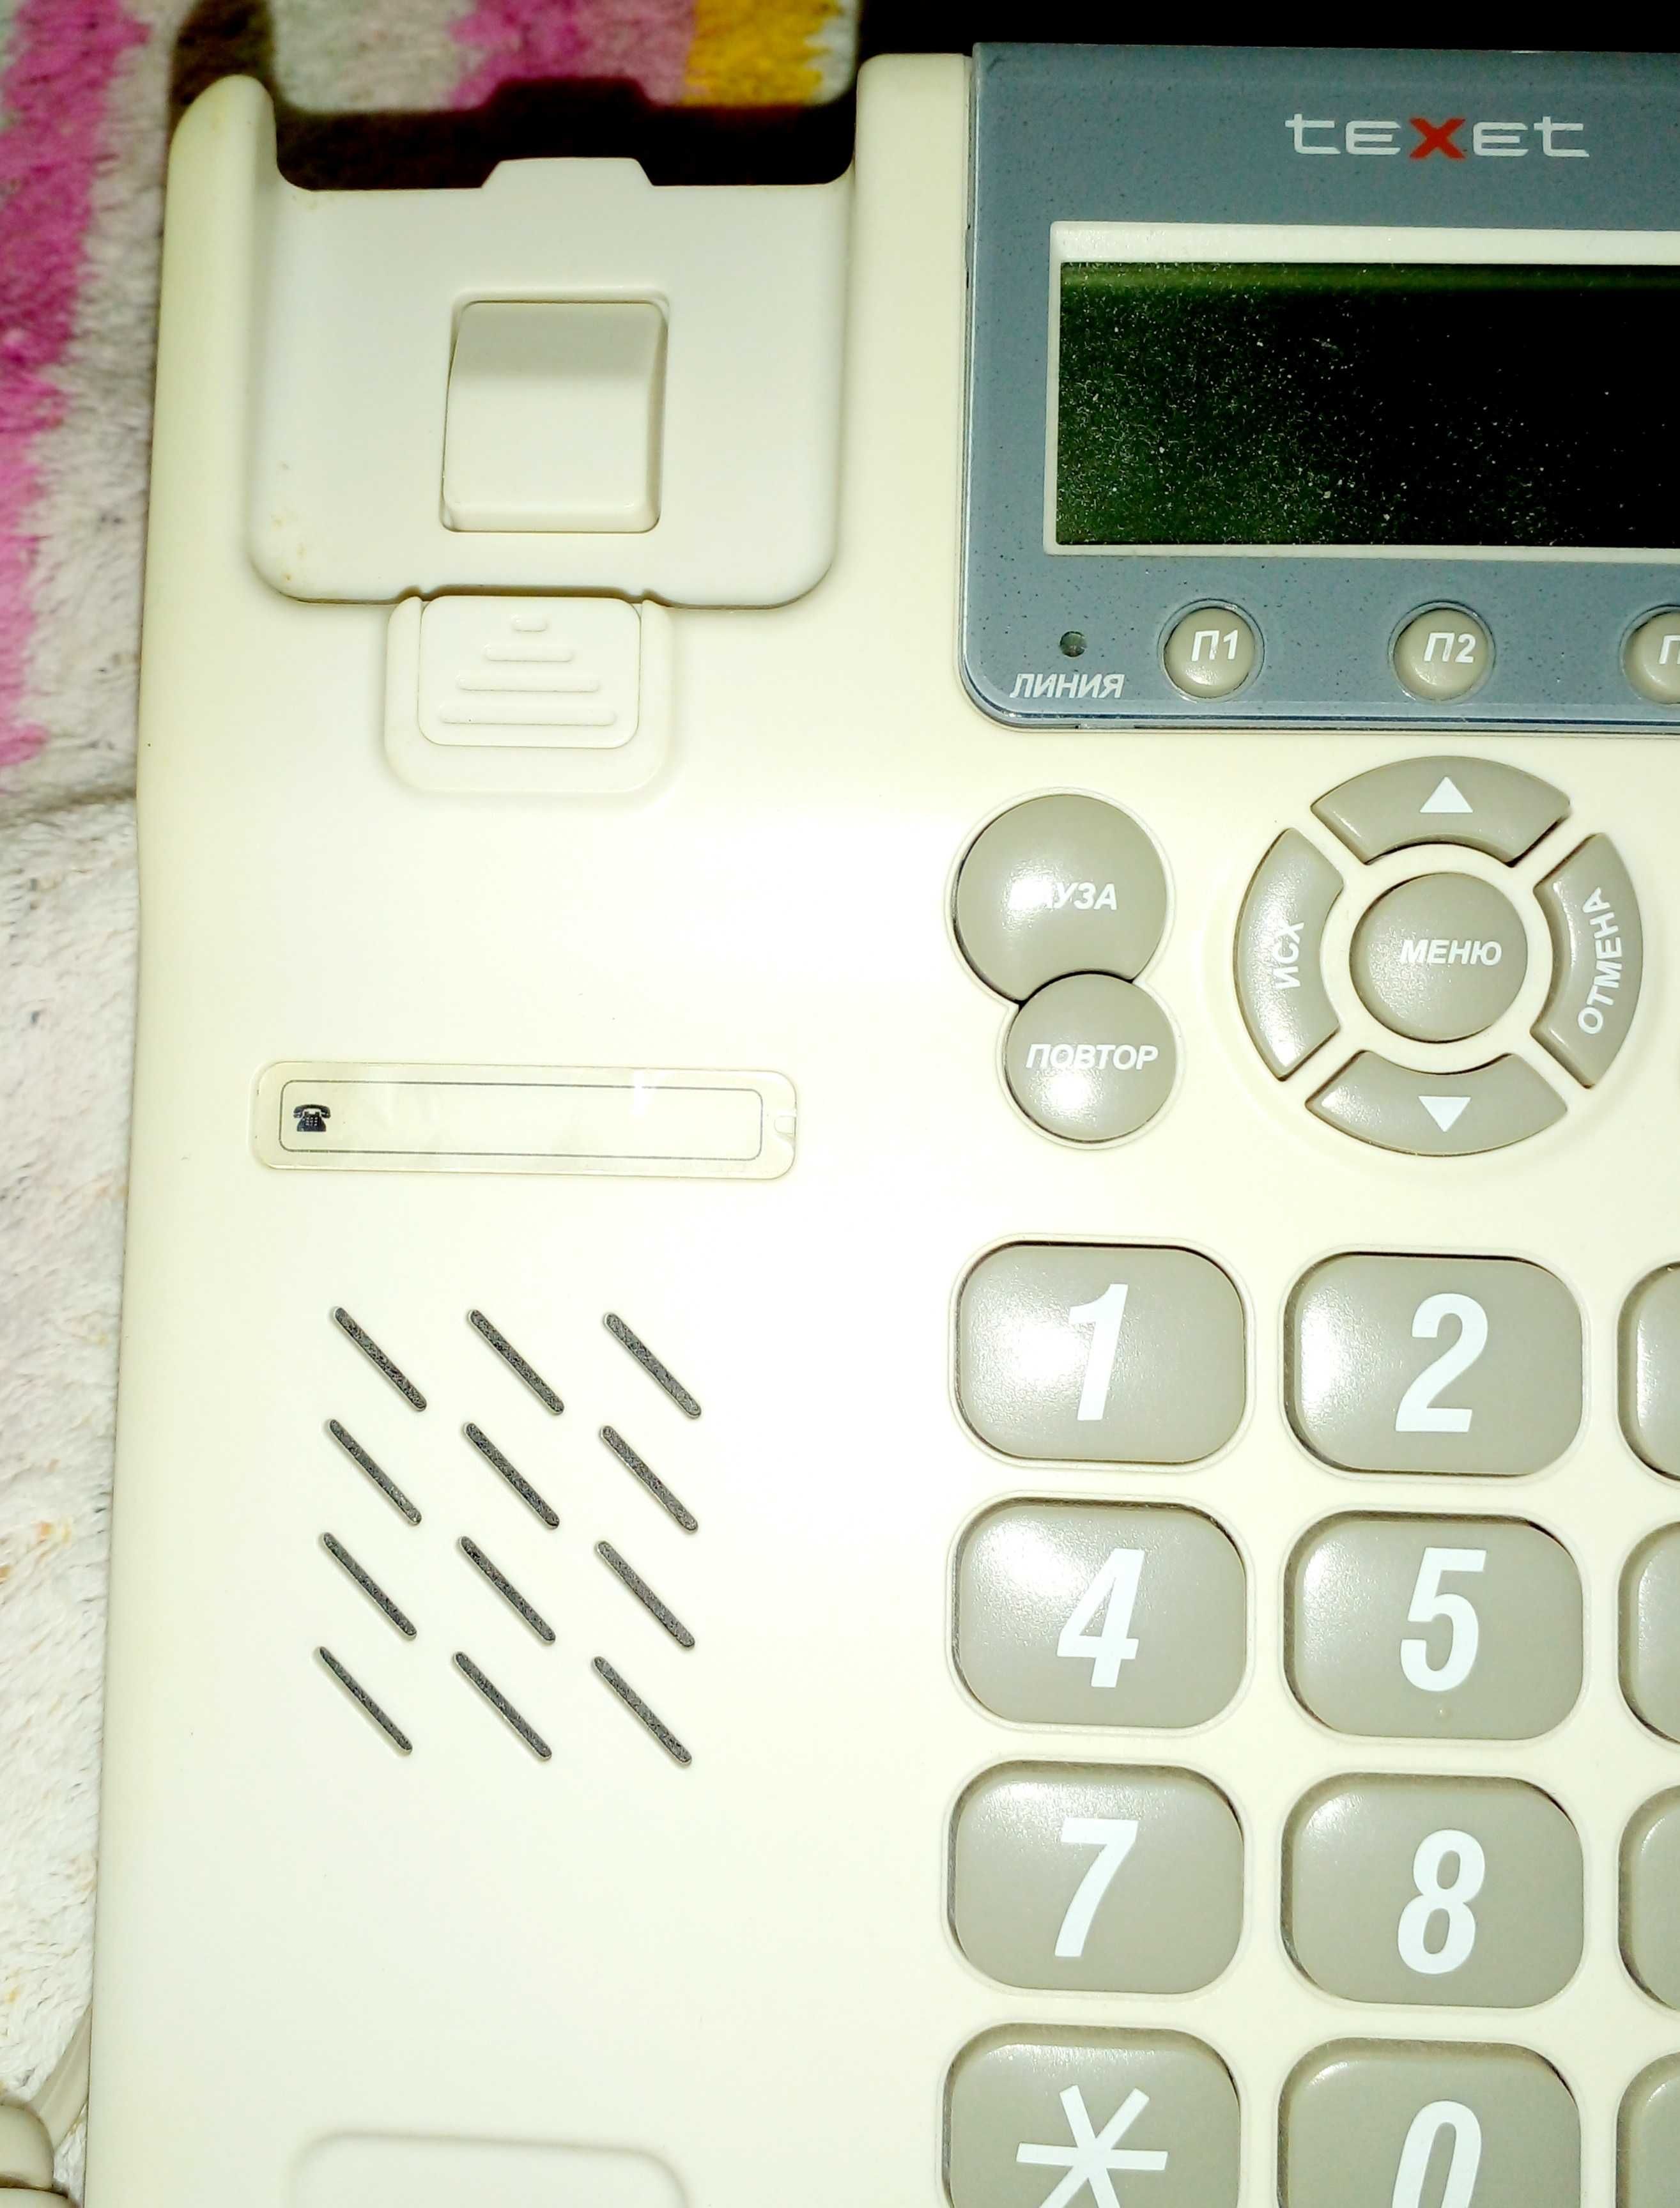 Телефон кнопочный с громкой связью, будильником, таймером и памятью